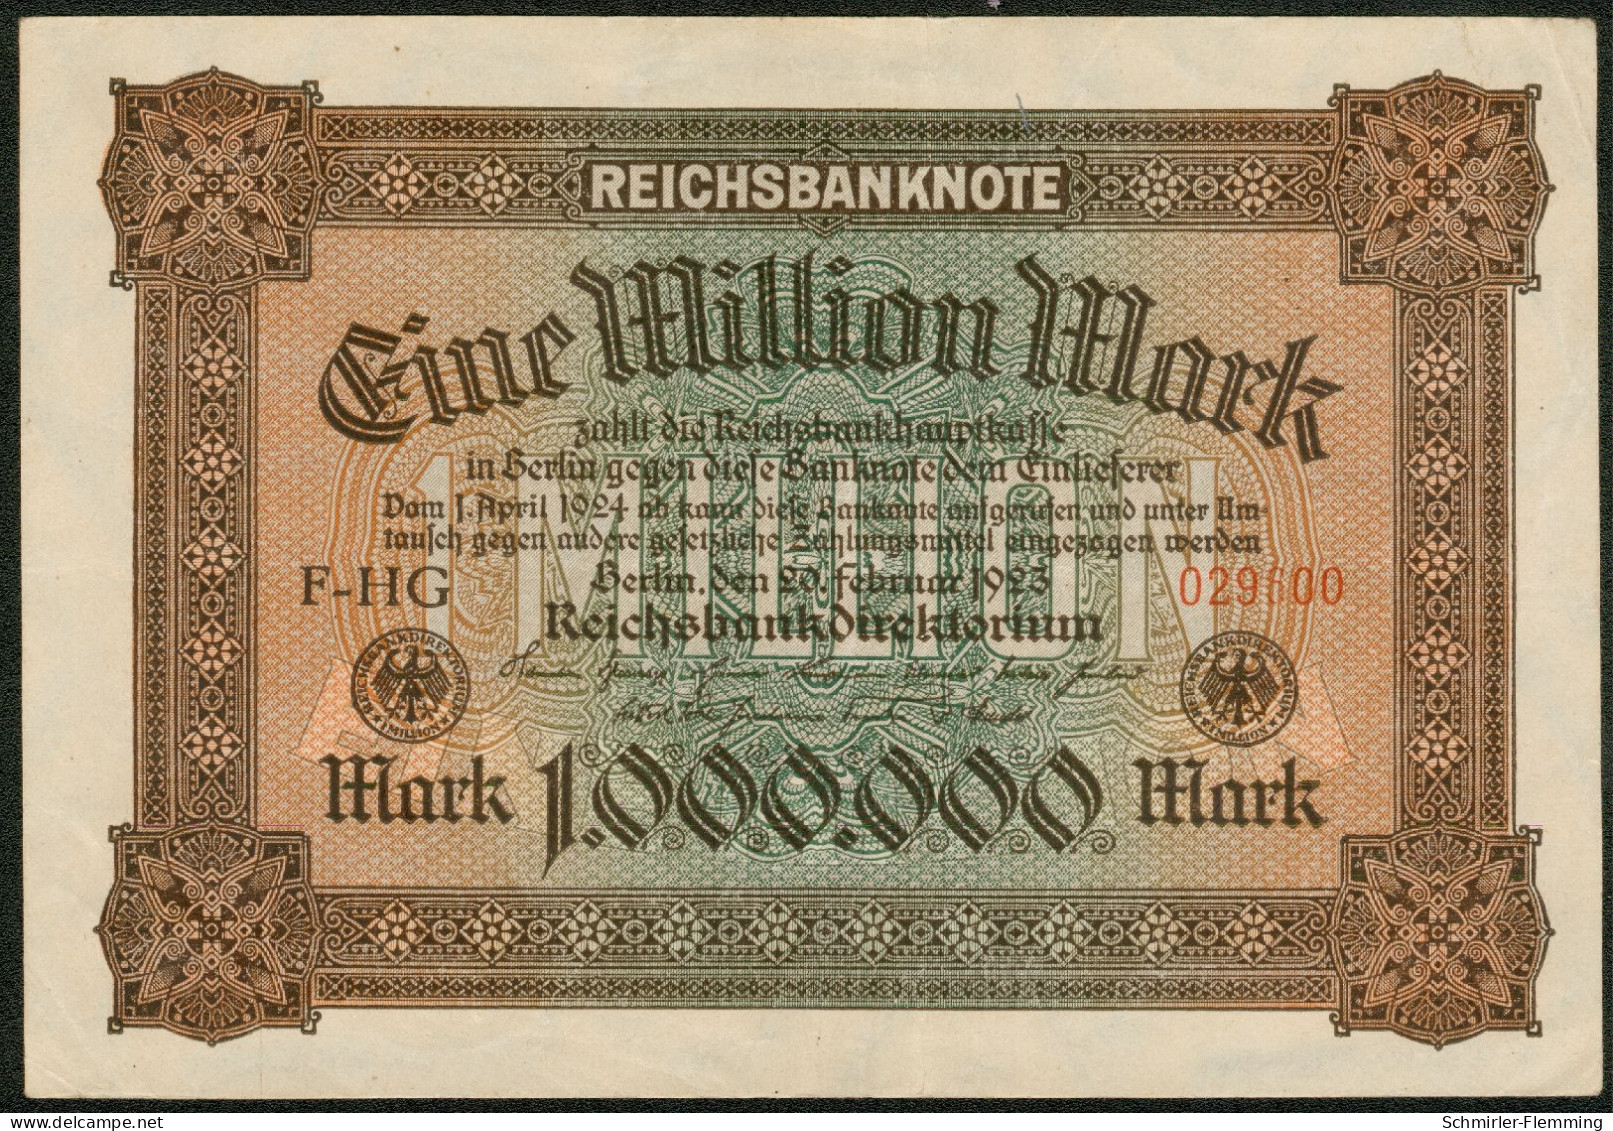 Deutsches Reich 1 Million Mark 20. Feb. 1923 Serie F-HG Rote Kenn Nr.029600(6stellig) KM#86 A, II - 1 Mio. Mark